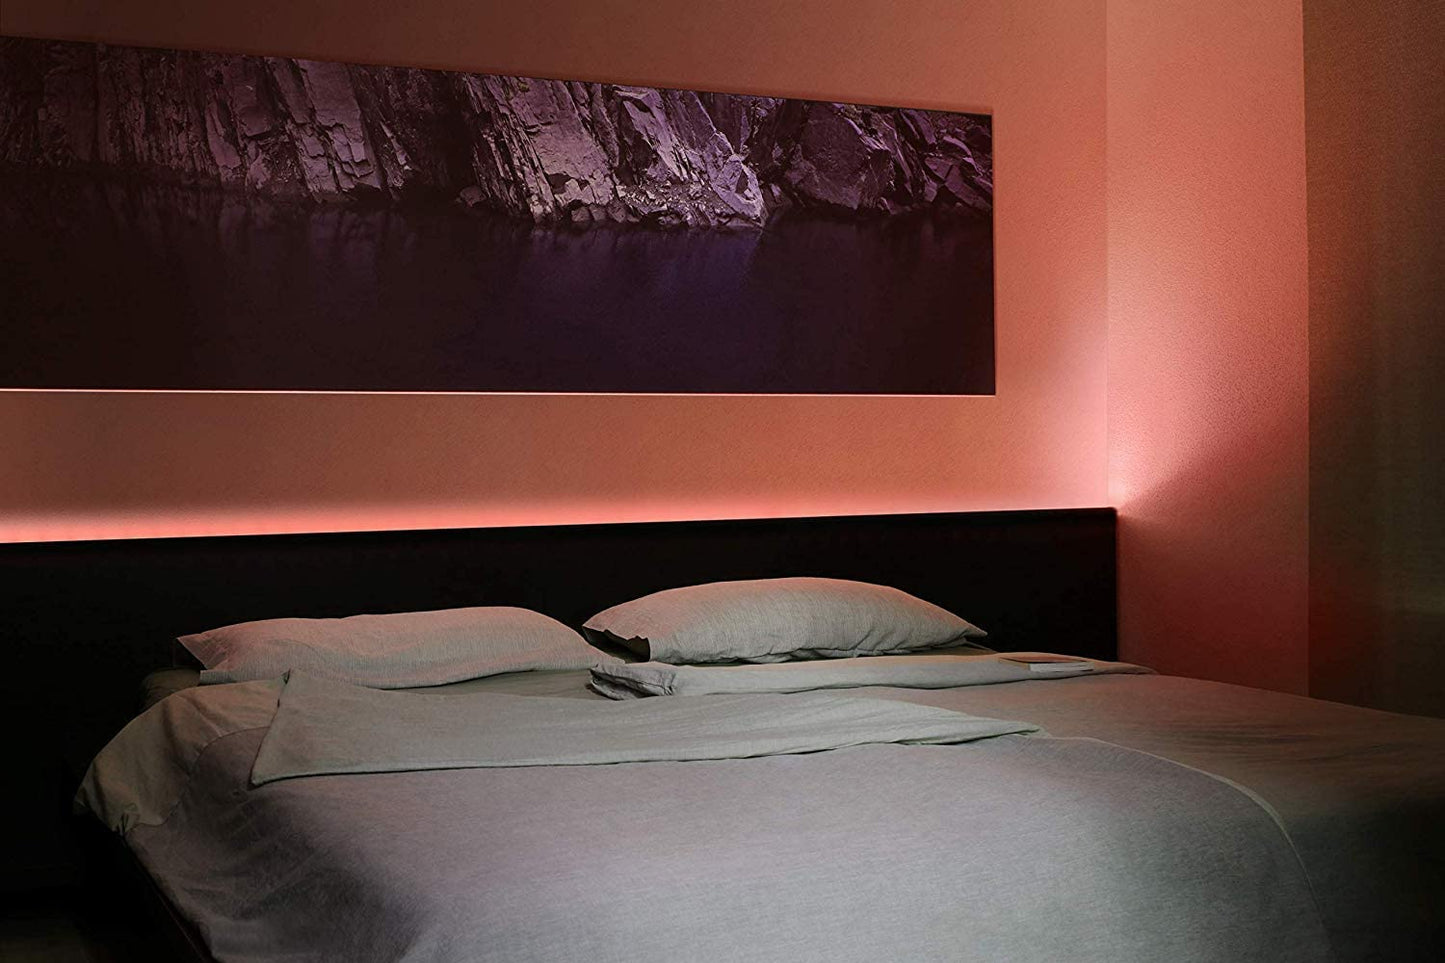 Eve Light Strip - Smart Home LED Lights Strip, Full Color, 1800 Lumens - Apple HomeKit Compatible (2m)